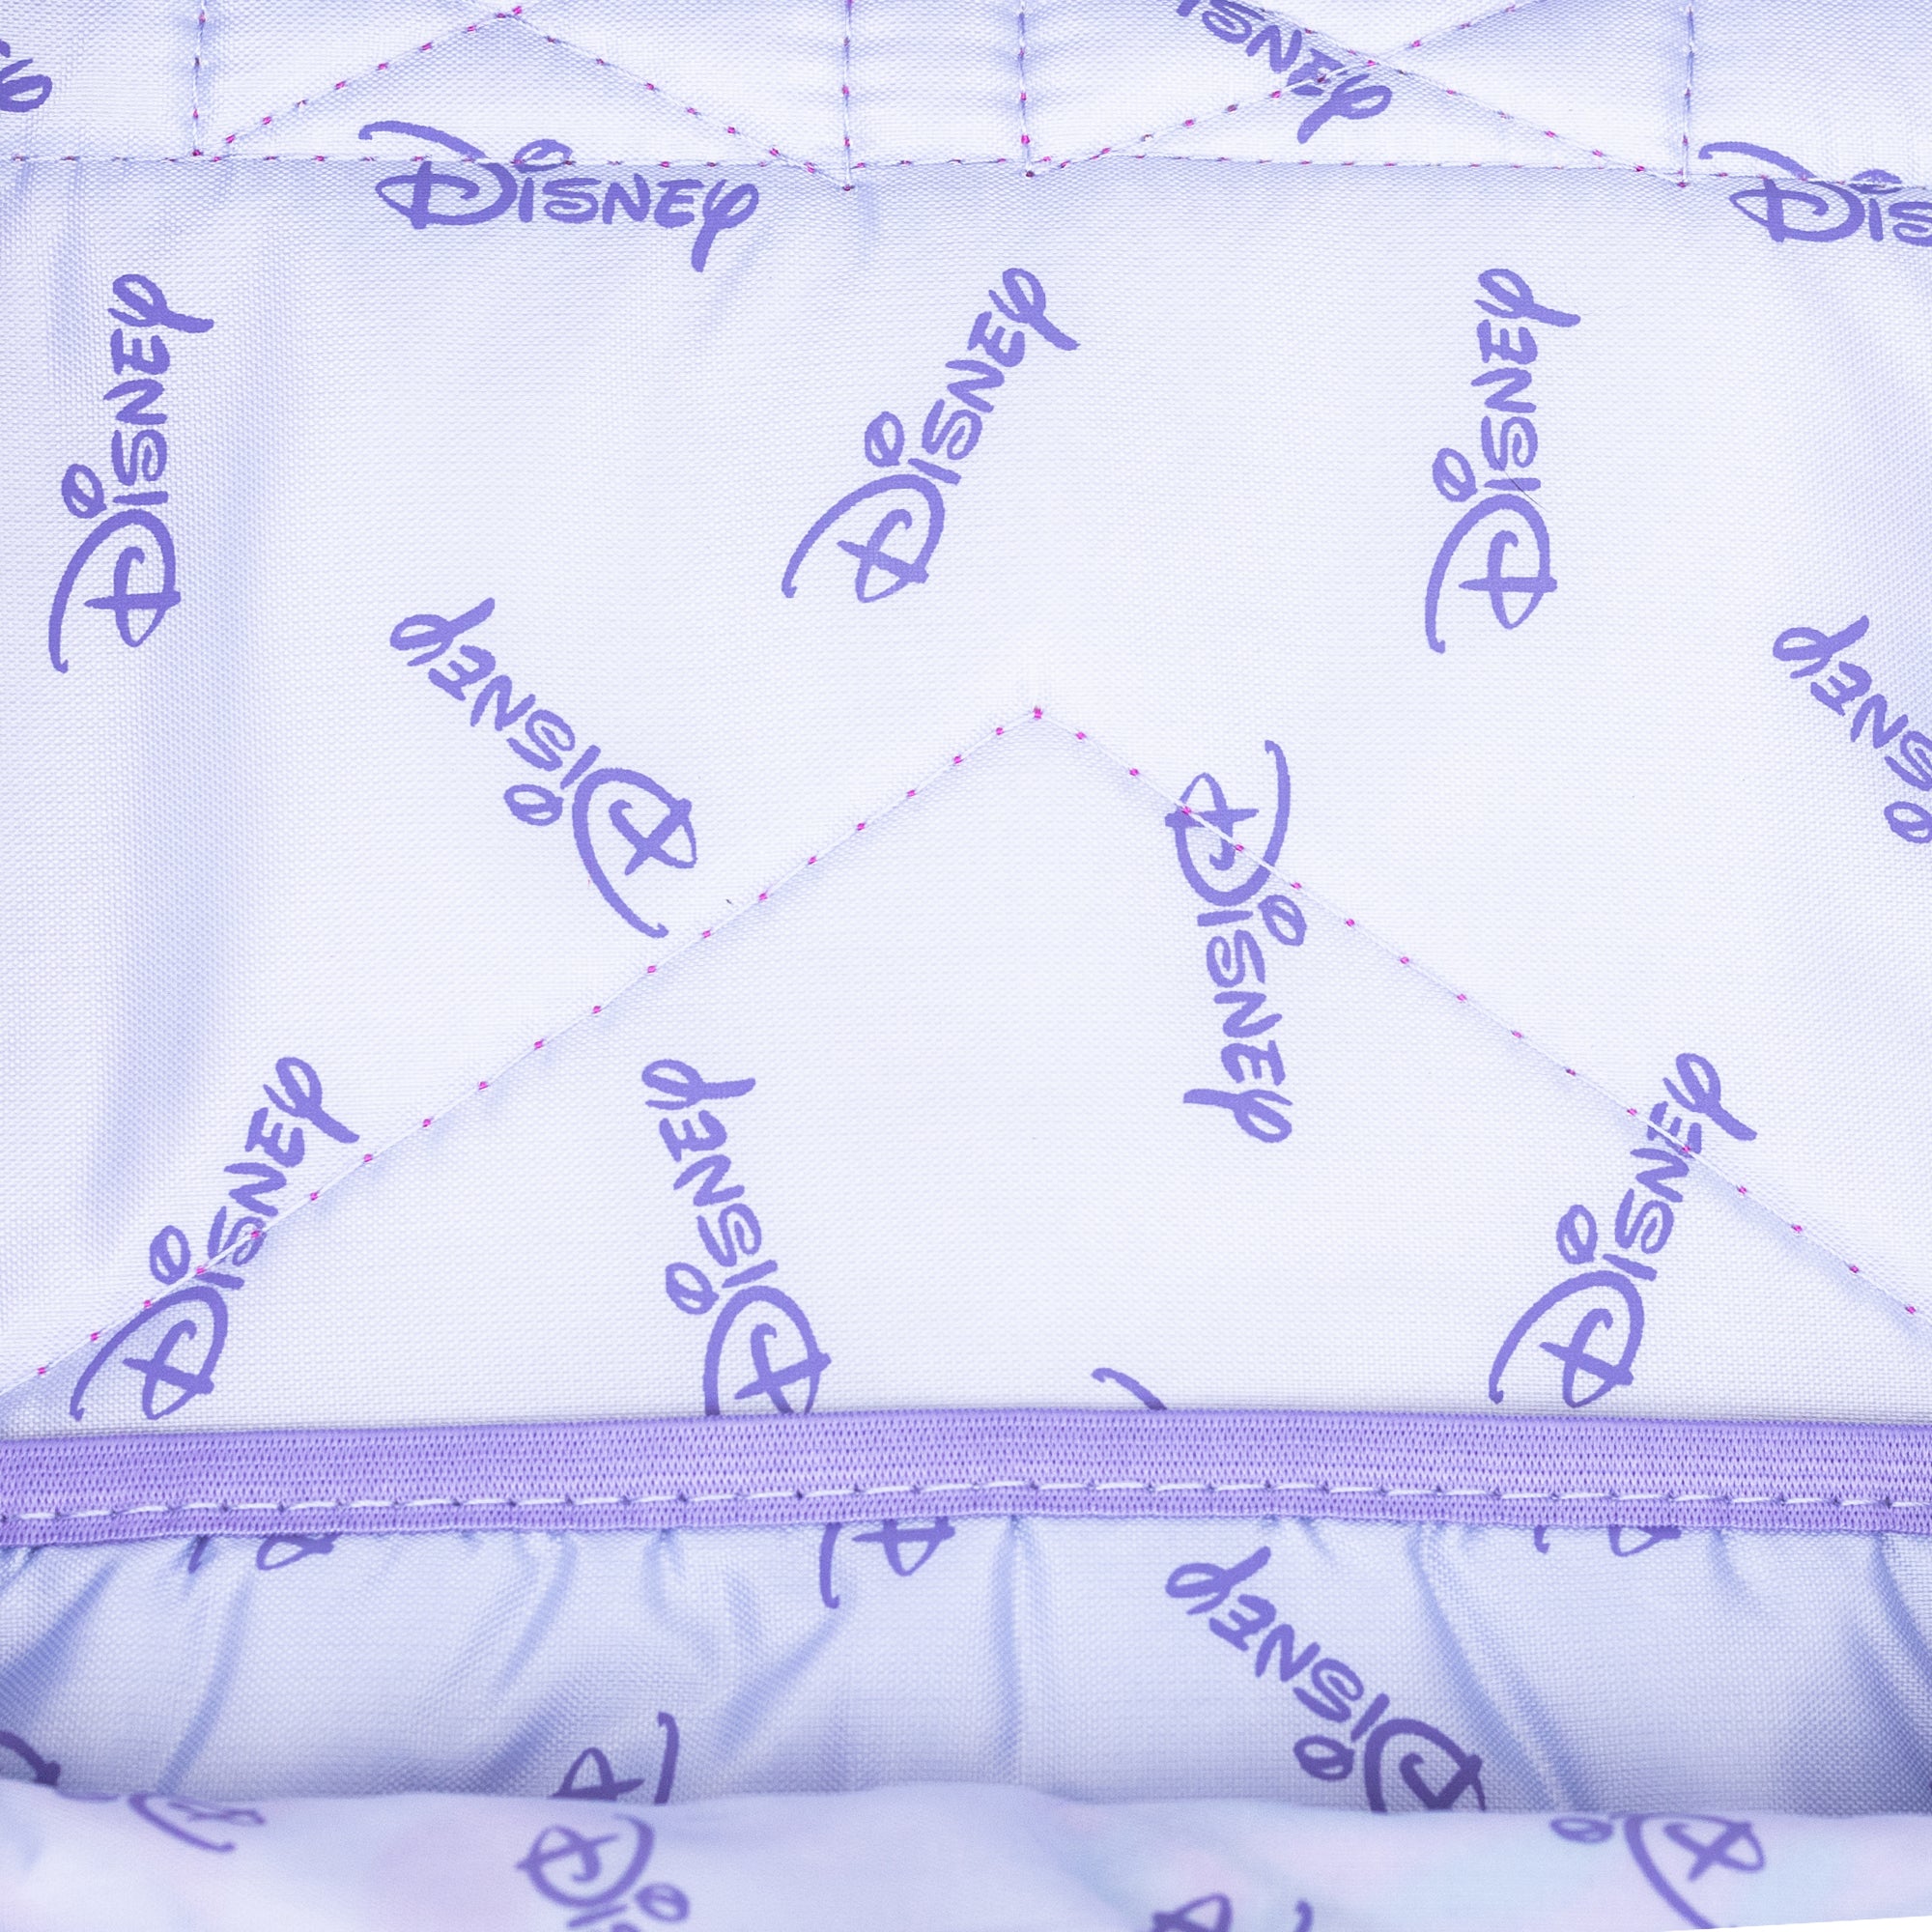 WondaPOP - Disney Princesses 17" Full Size Nylon Backpack